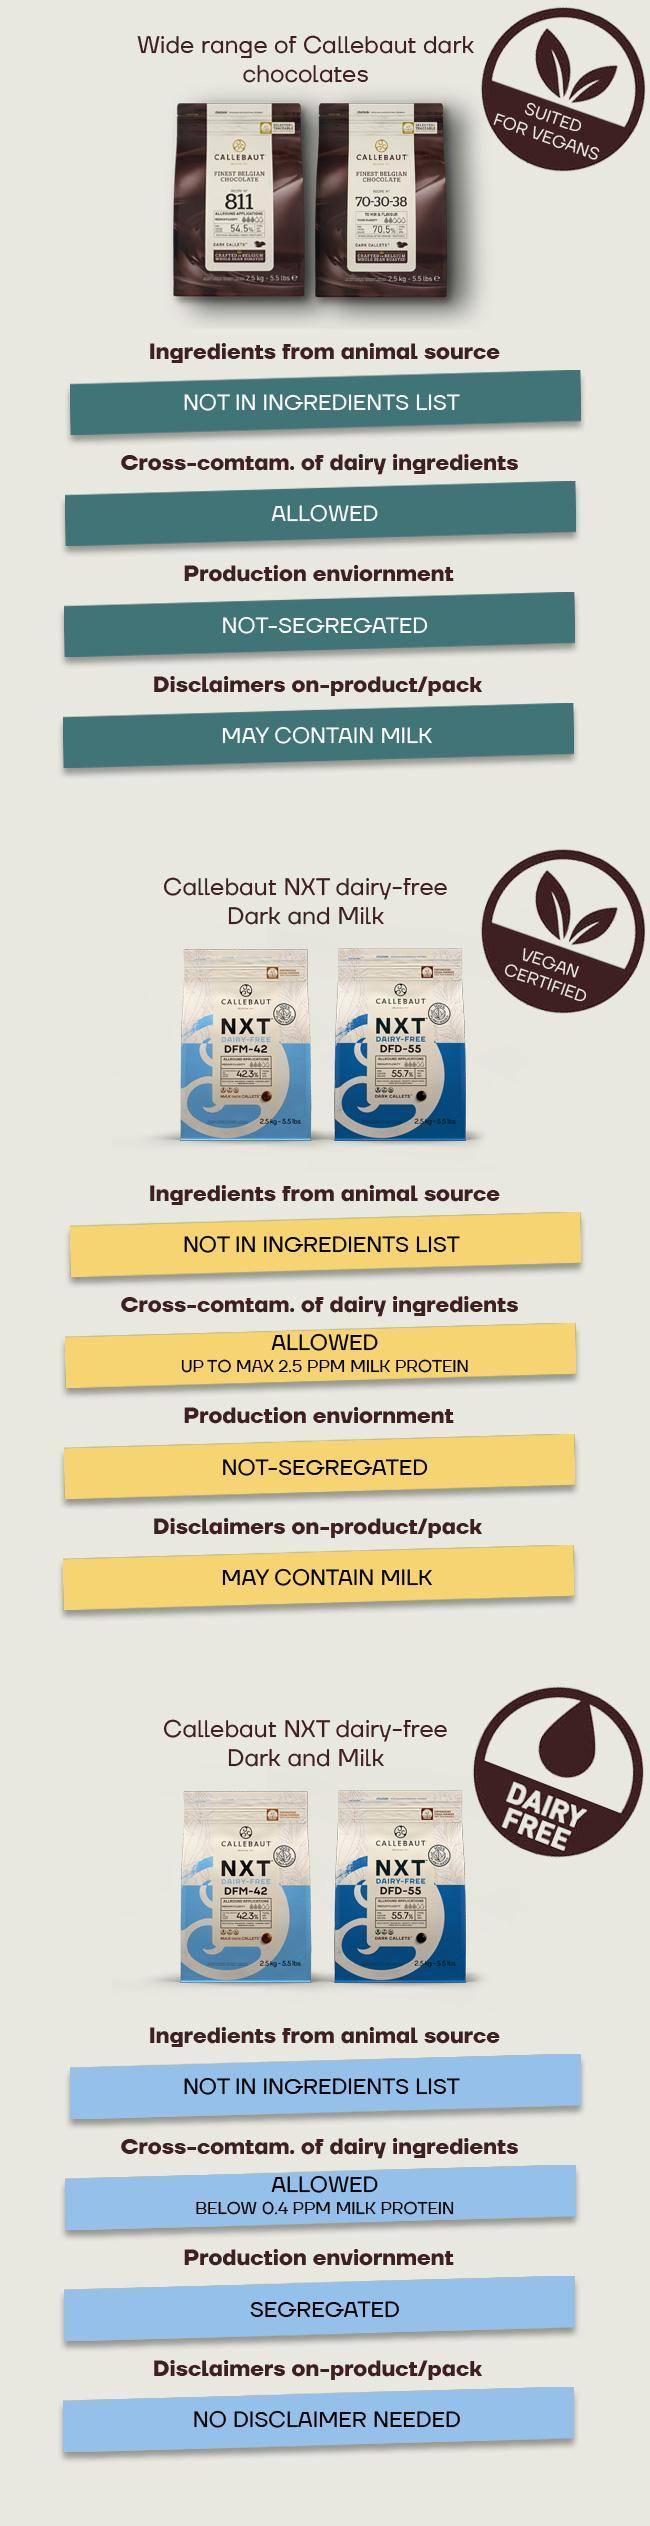 NXT - Der Unterschied: Vegan, auf pflanzlicher Basis, ohne Milchprodukte.